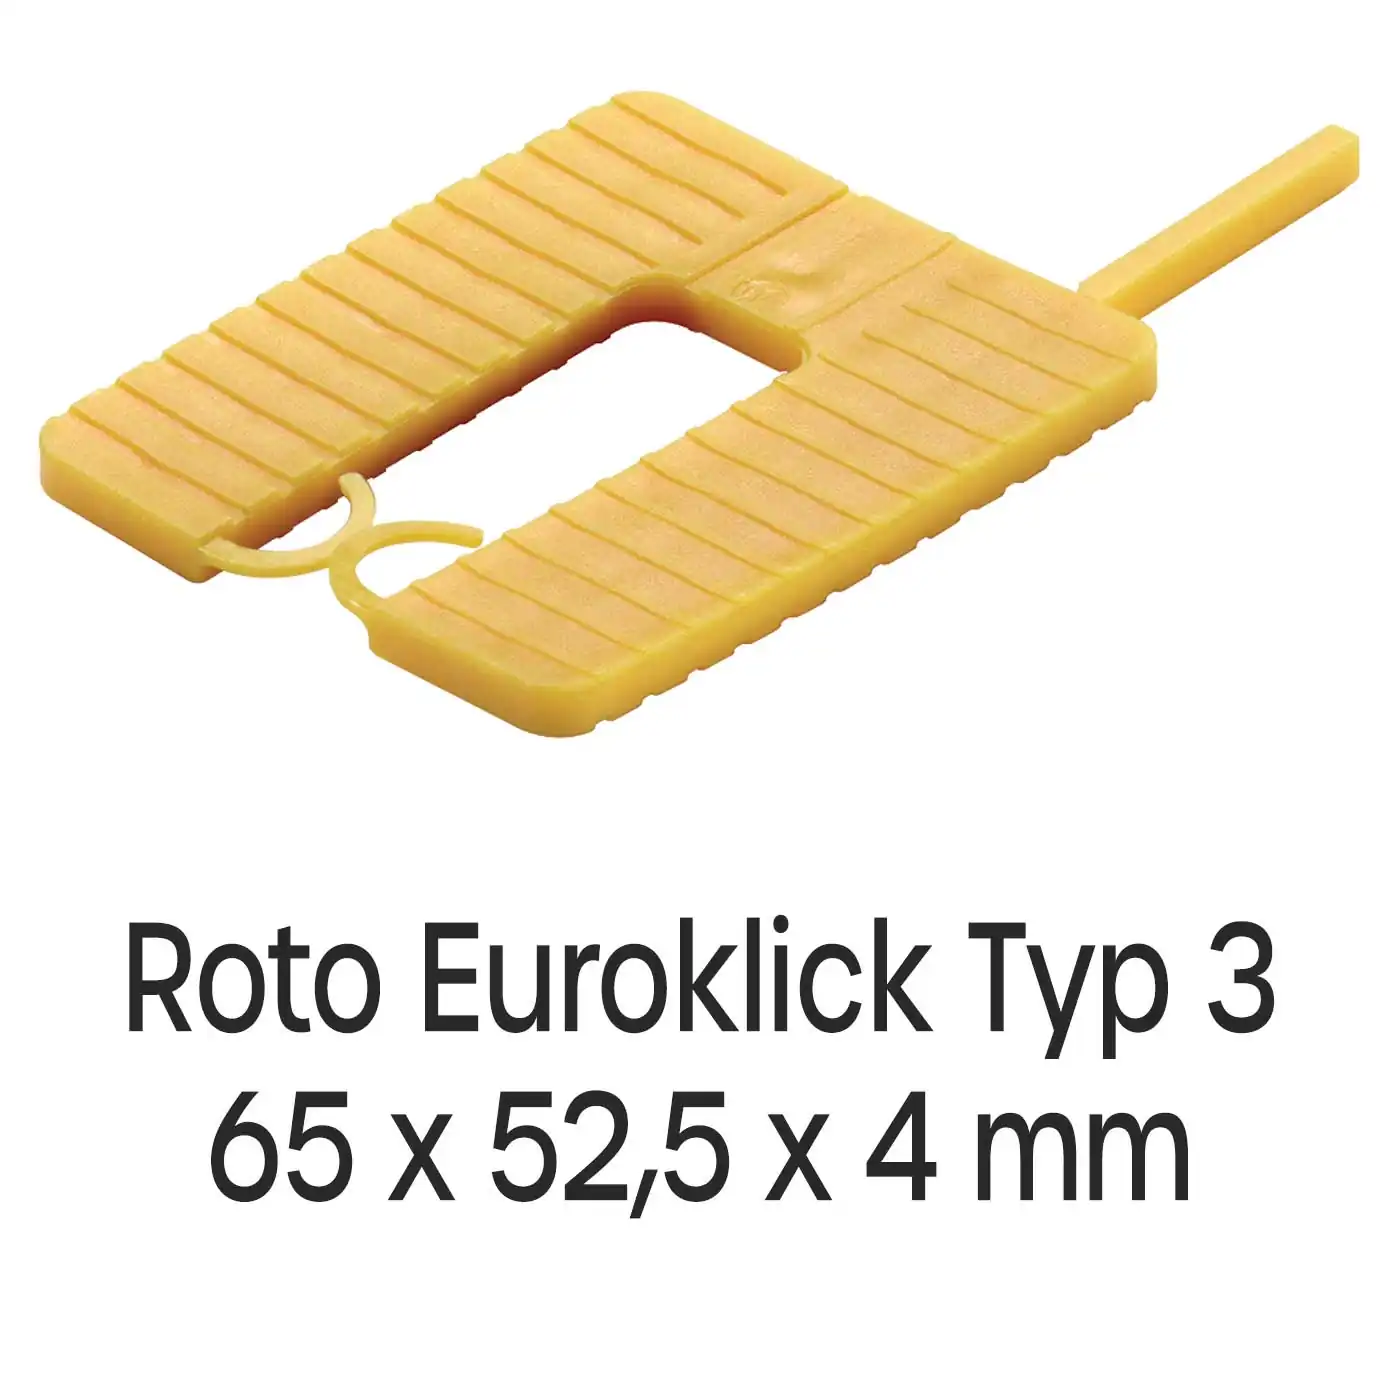 Distanzplatten Roto Euroklick Typ 2 65 x 52,5 x 4 mm 1000 Stück